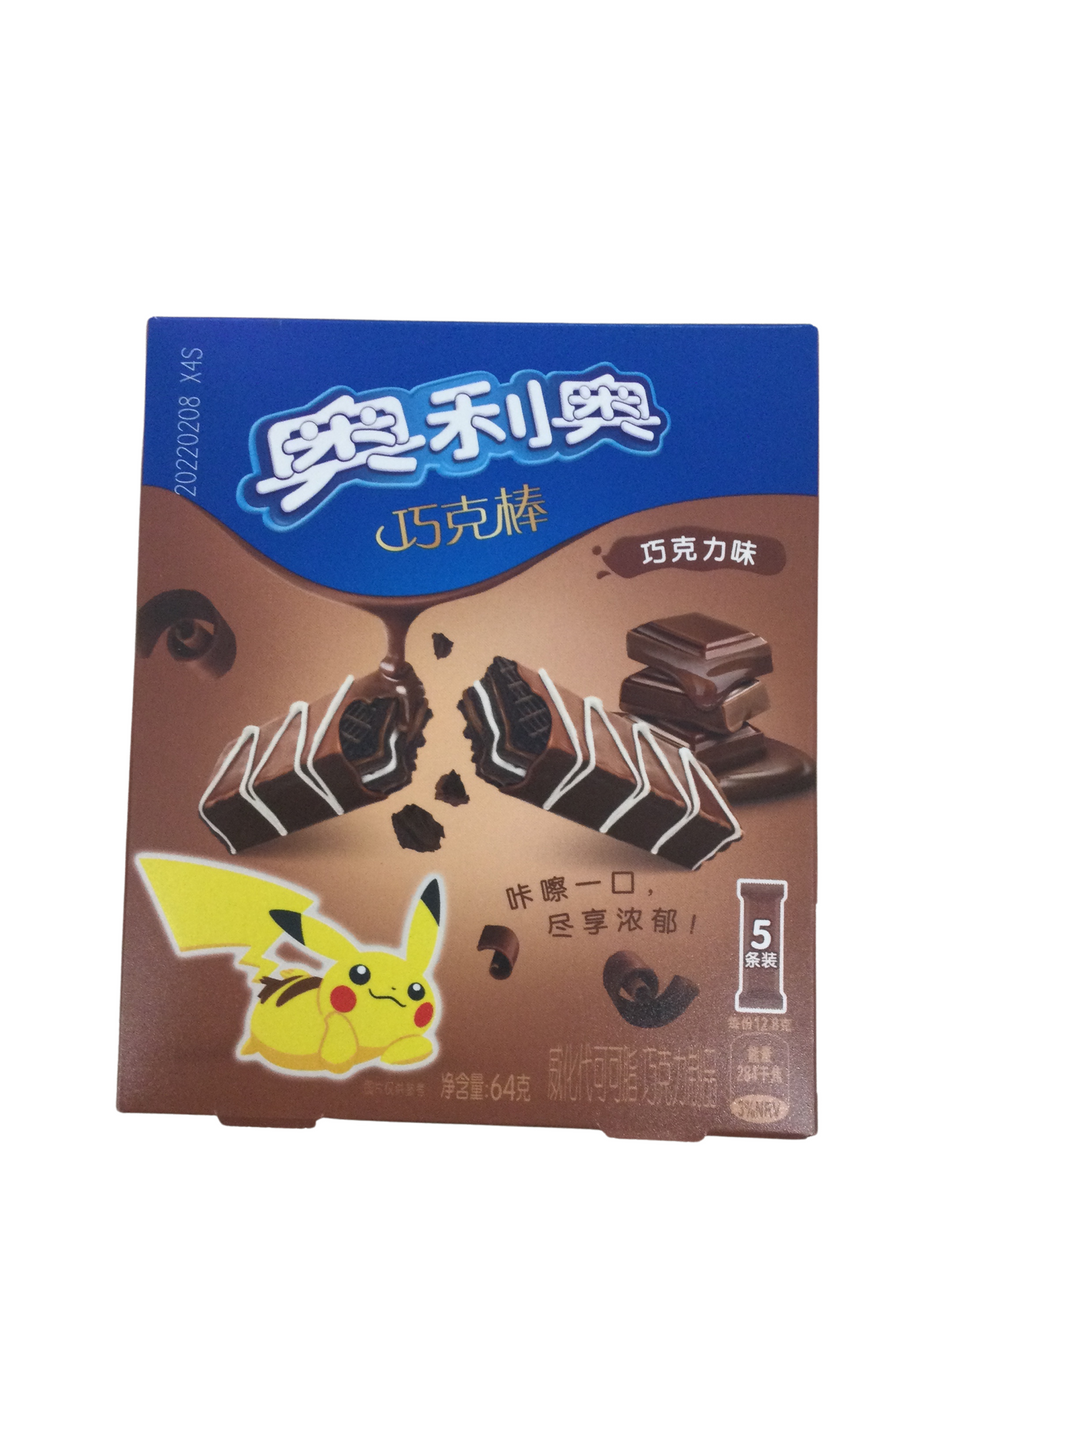 Pokémon Wafters Chocolate